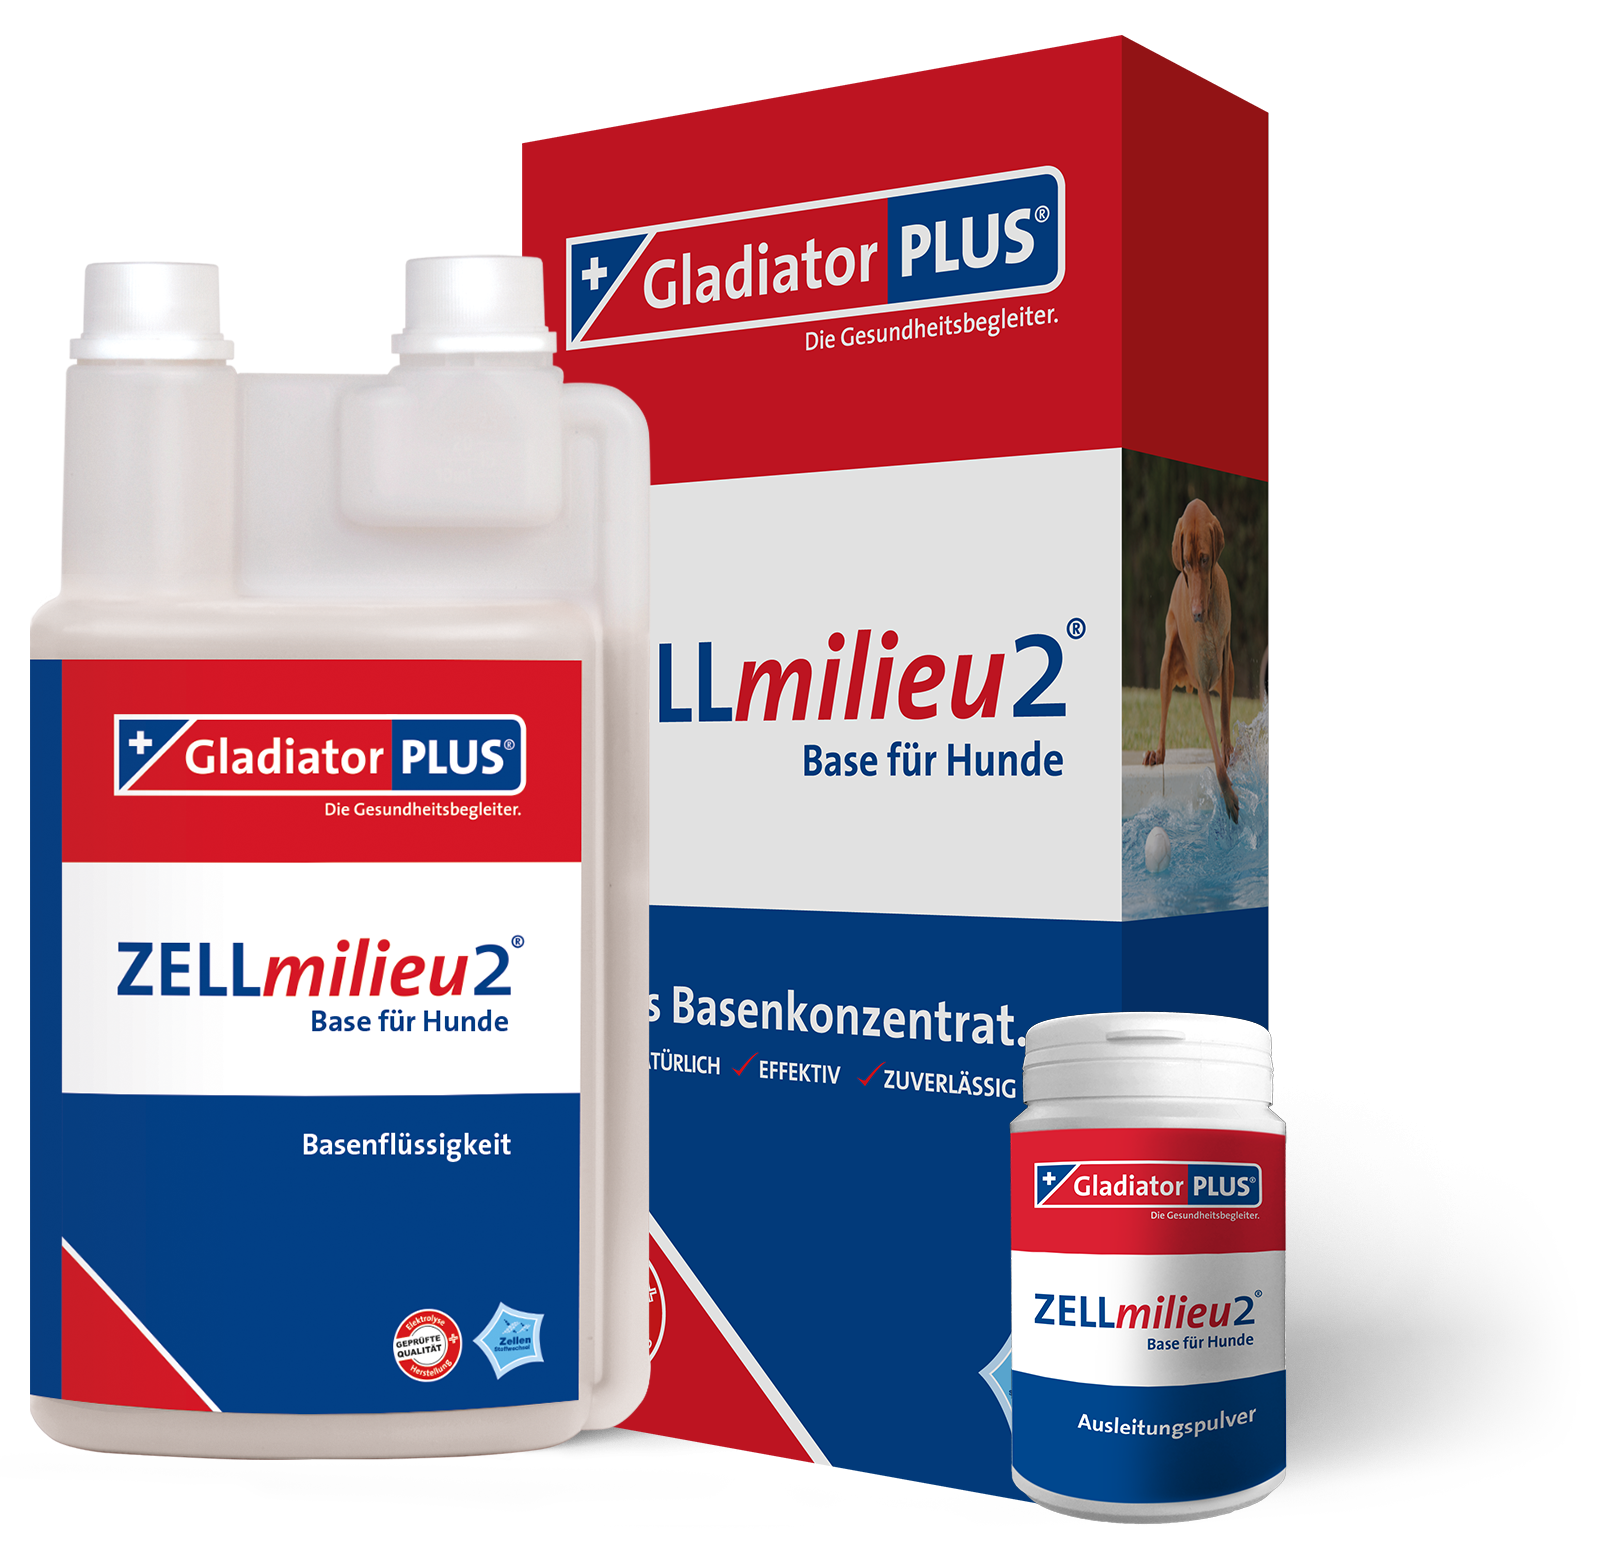 GladiatorPLUS - ZELLmilieu2 Base + Pulver für Hund - die Basenkonzentratsergänzung zu Gladiator PLUS